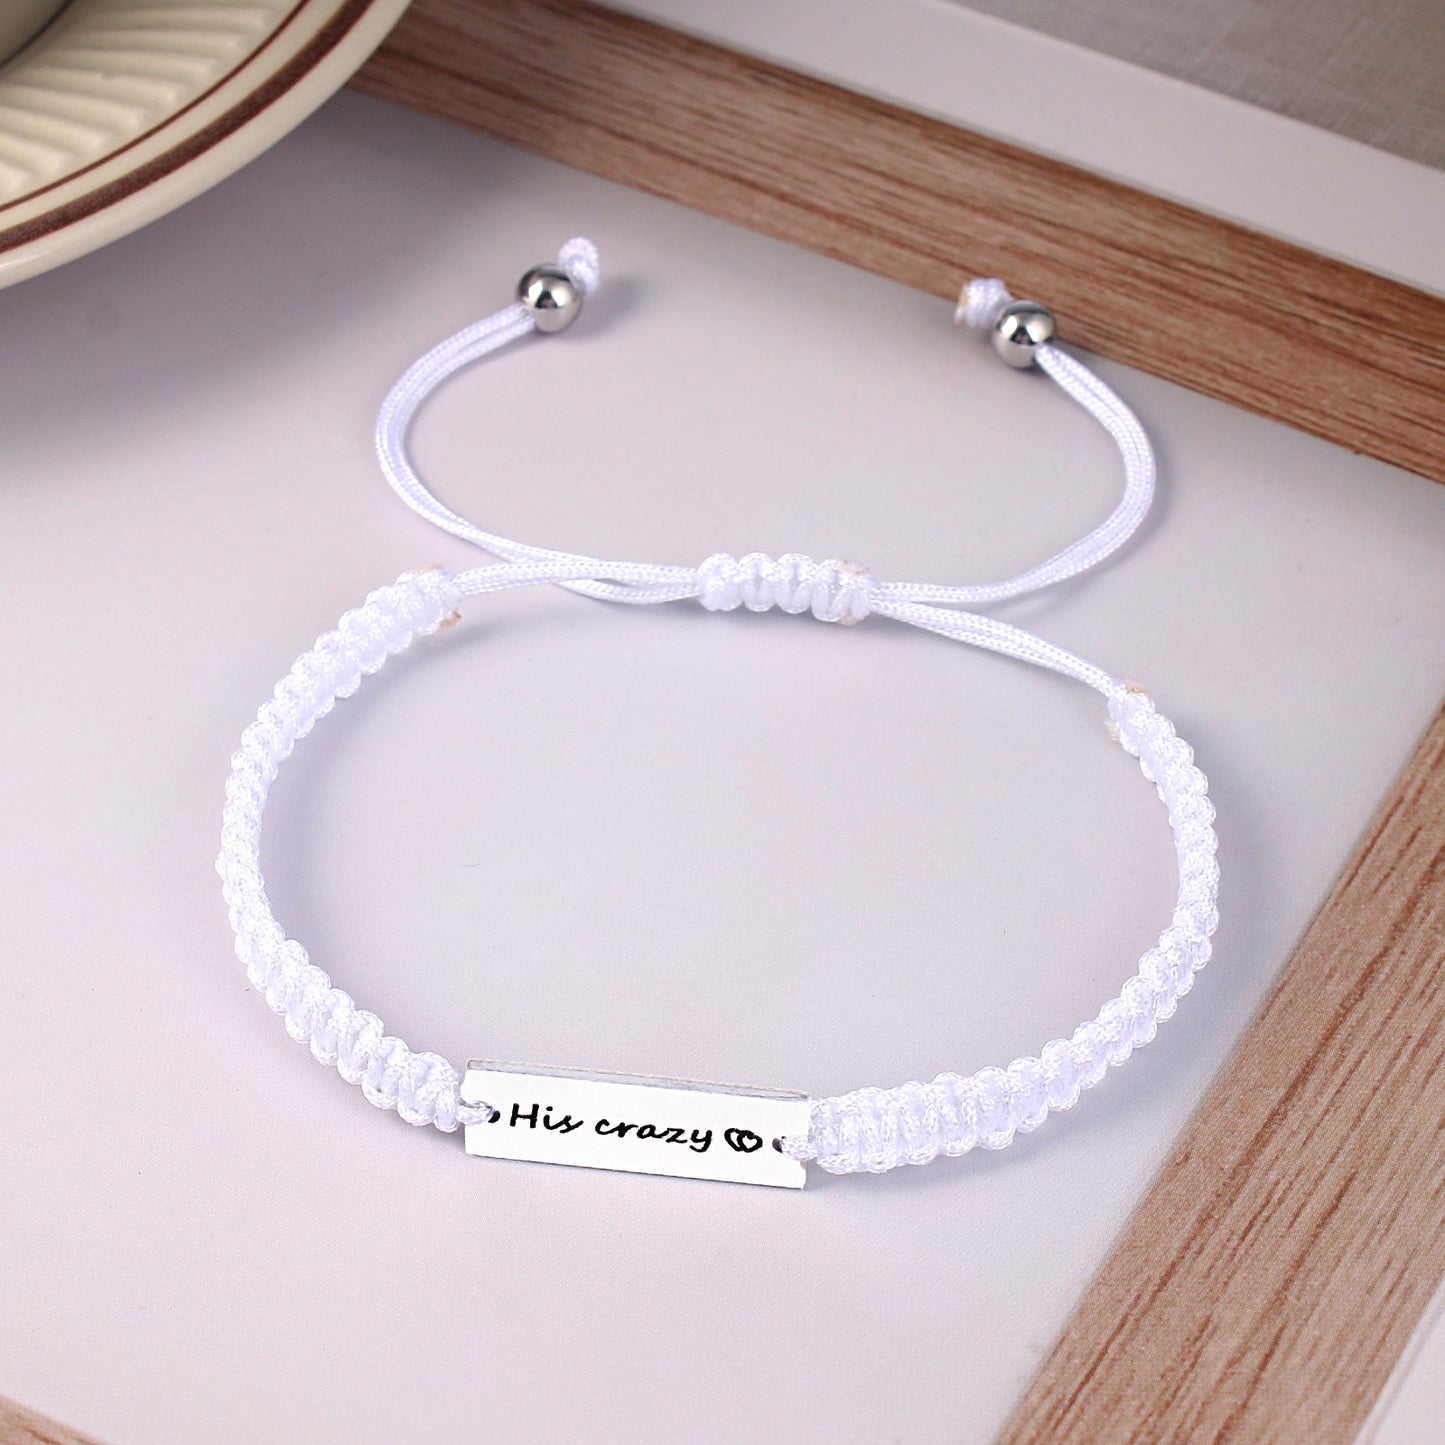 Simple Style Letter Stainless Steel Nylon Handmade Couple Bracelets